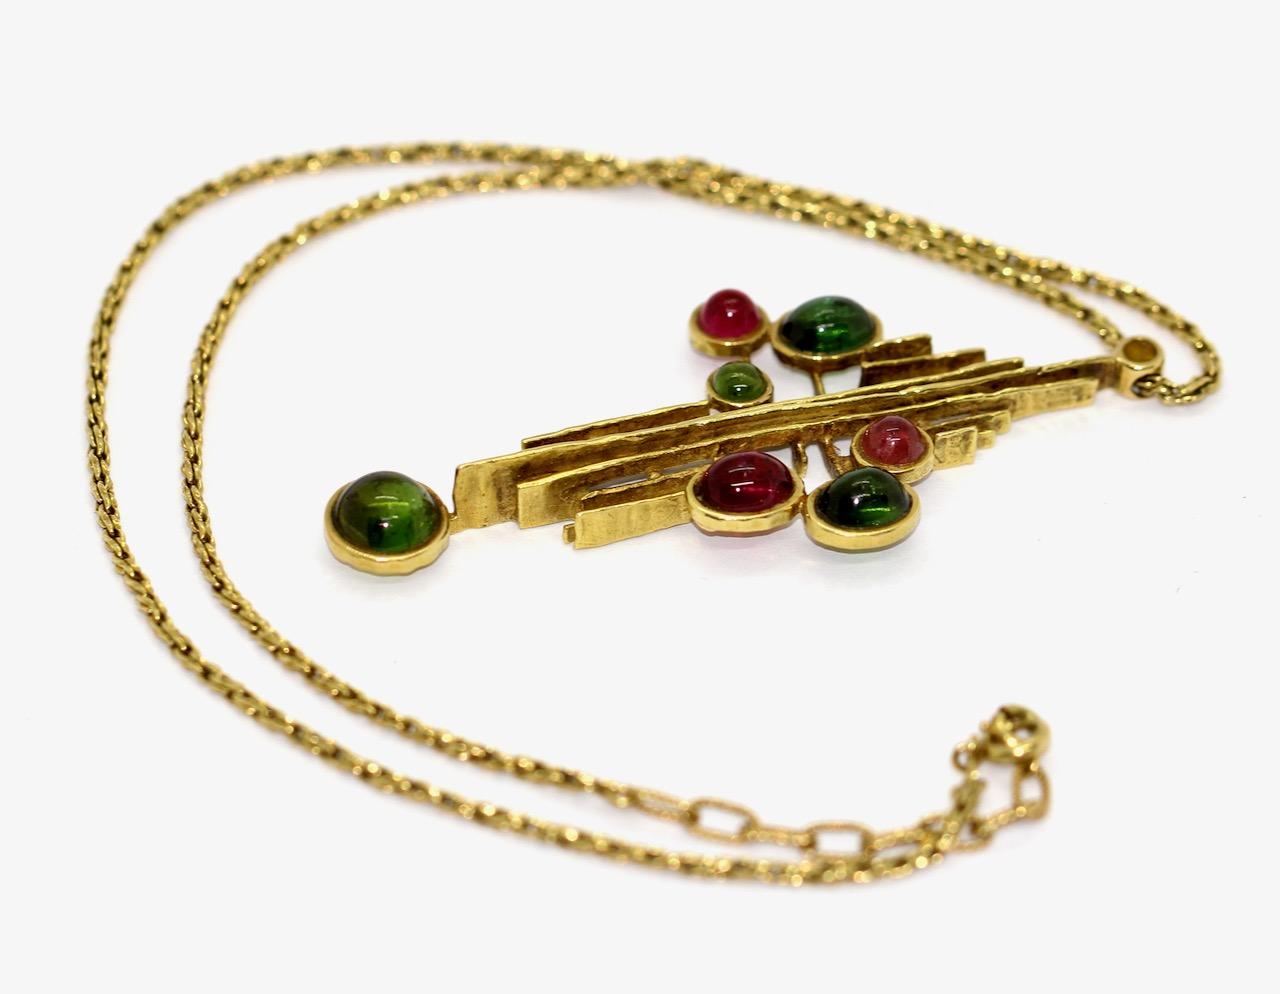 Cabochon Designer Pendant Enhancer by Grosse, Christian Dior, 18 Karat Gold and Gemstones For Sale